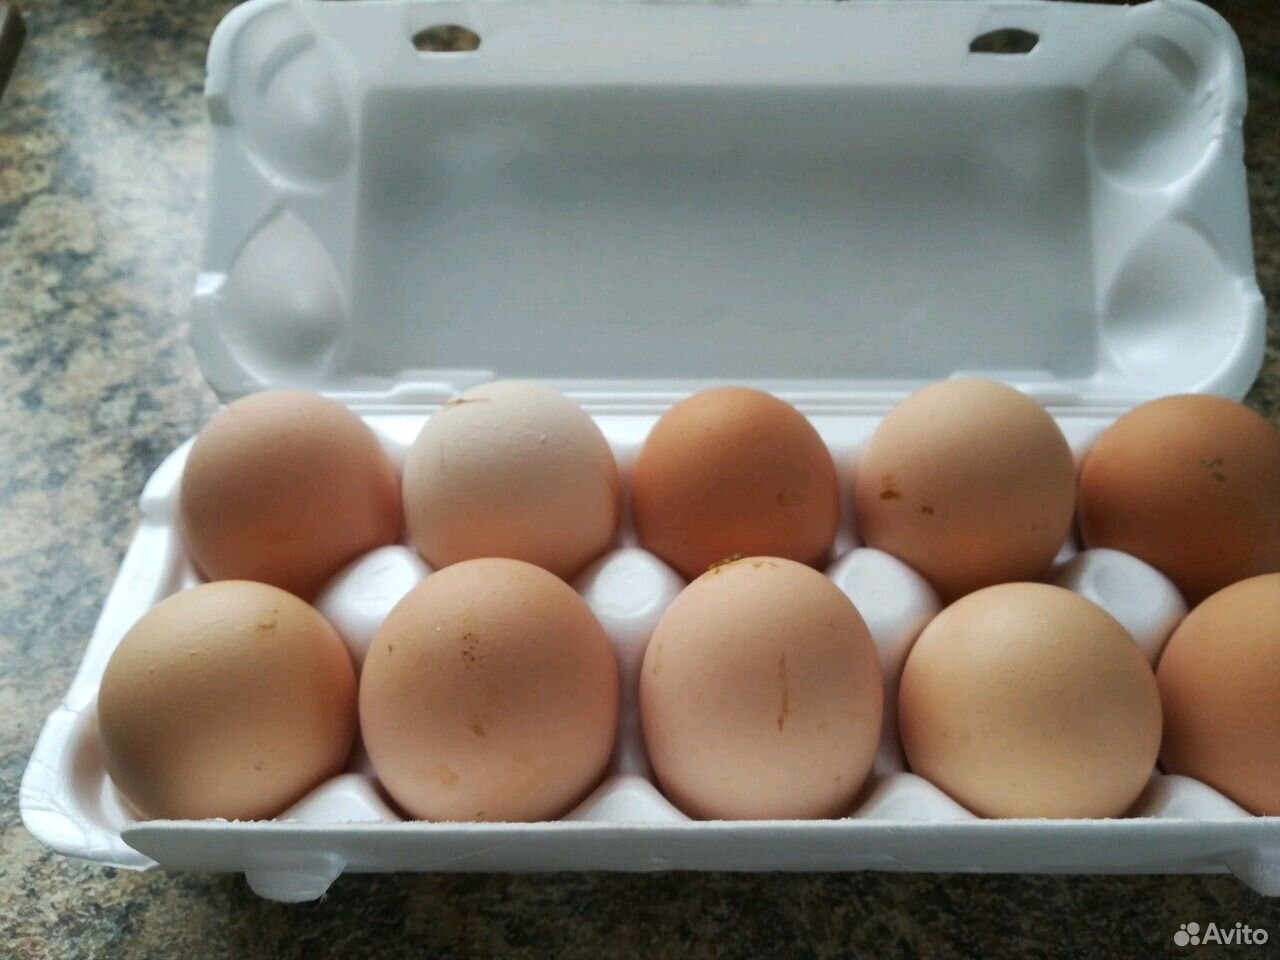 Купить яйца джерсийских гигантов. Джерсийский гигант яйцо. Десяток яиц. Яйца джерсийского гиганта фото. Яйцо джерсийского гиганта фото вес.